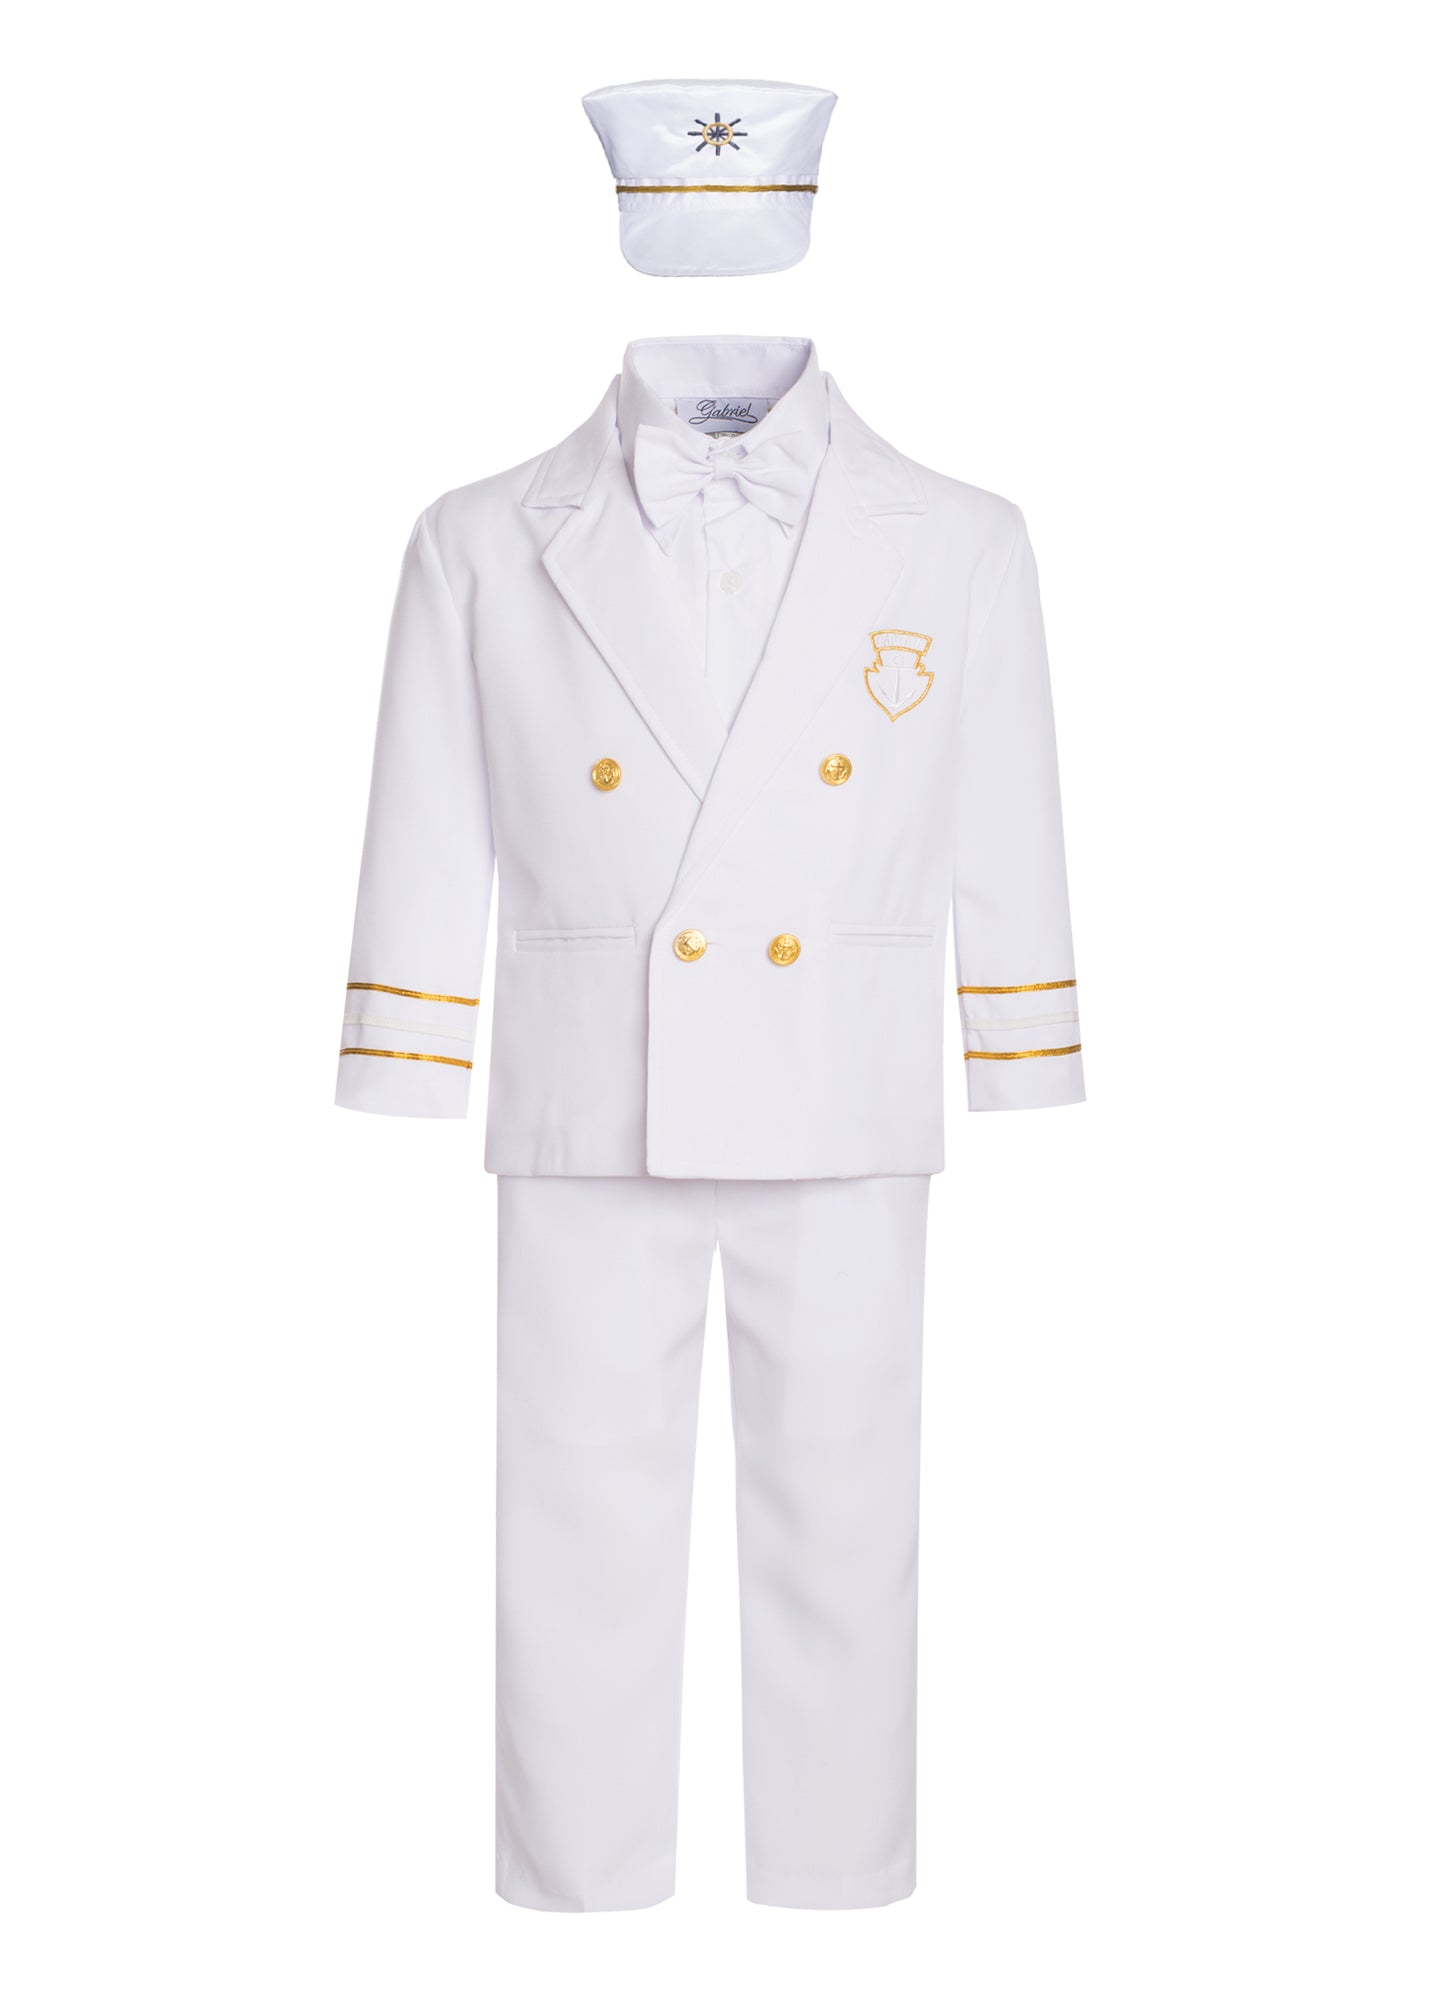 Boy Captain Sailor Suit  Nautical Outfit RFL-CP007